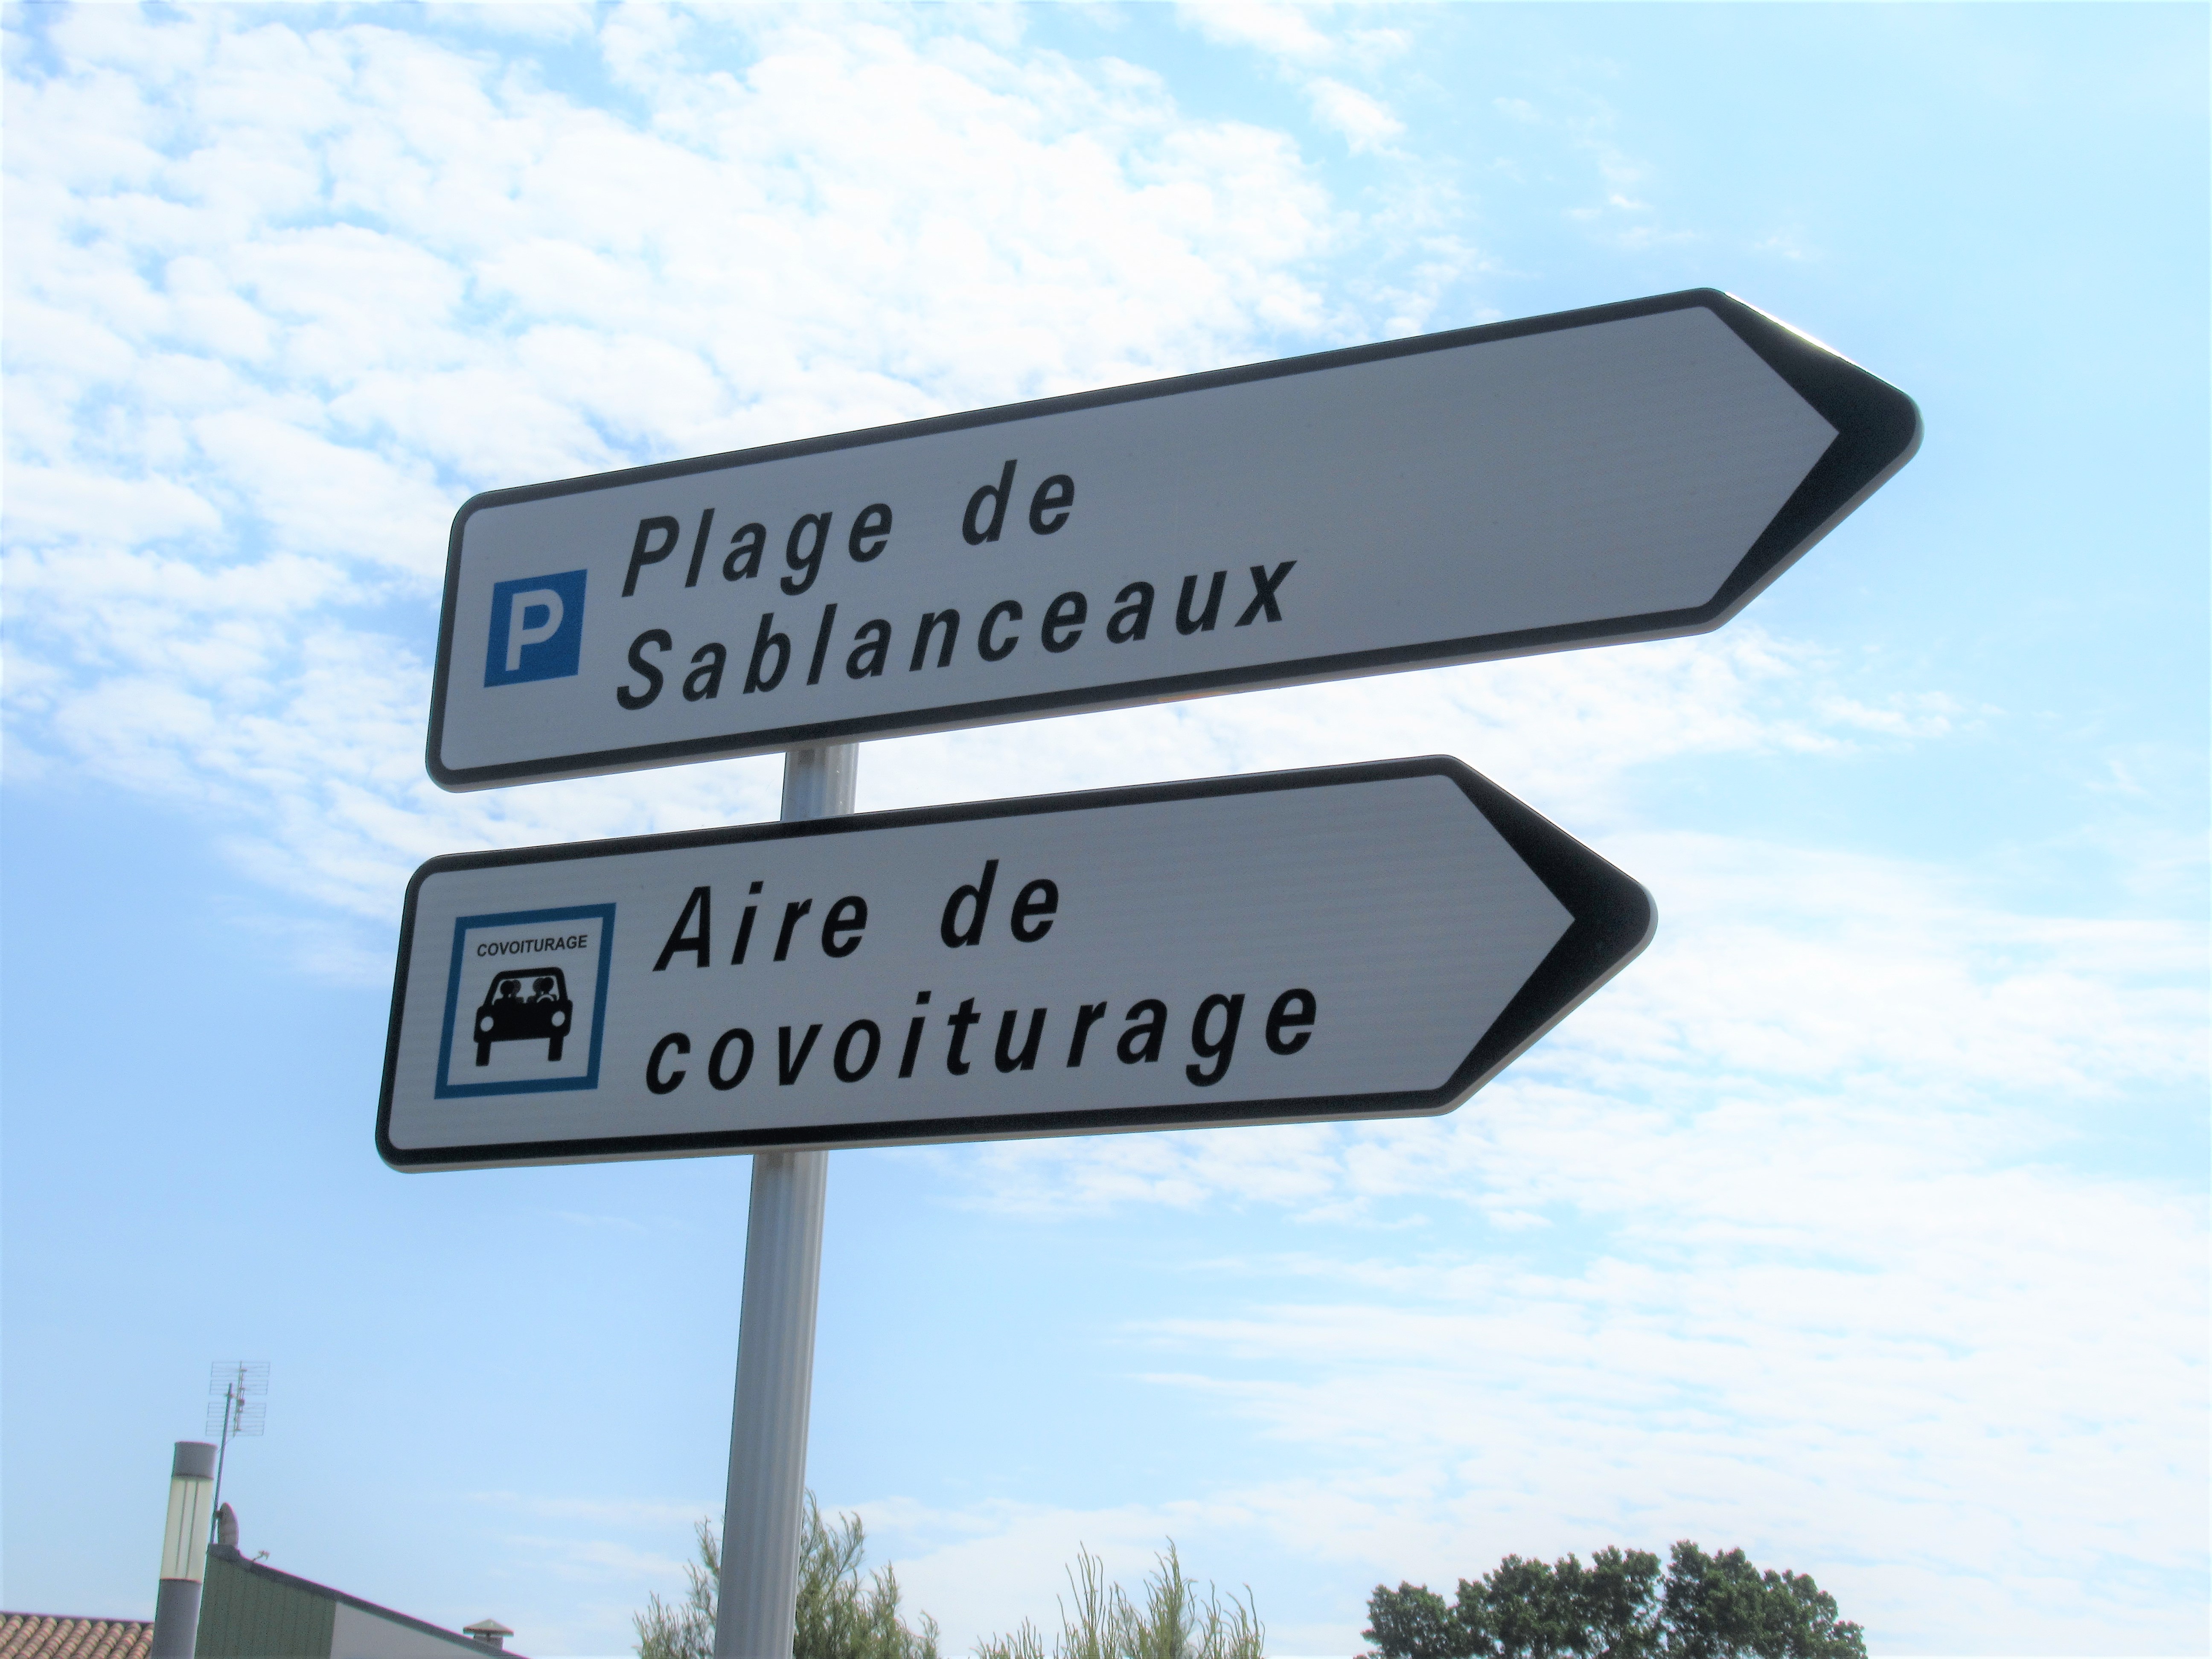 Parking de Sablanceaux - Rivedoux-Plage, Destination Ile de Ré